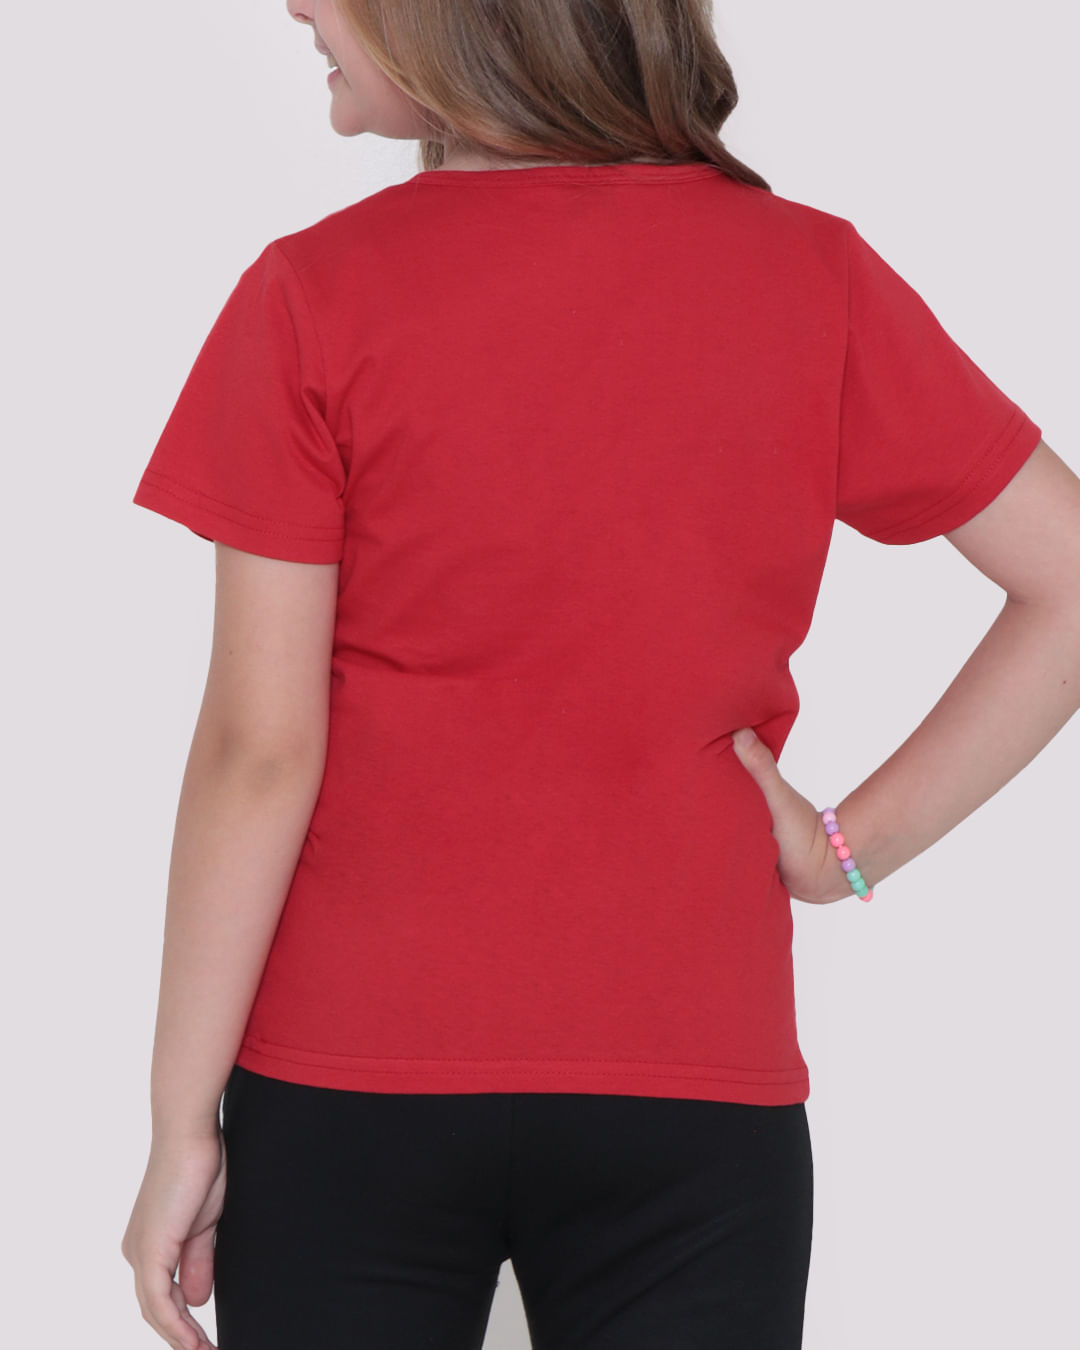 Camiseta-Juvenil-Disney-Minnie-Vermelha